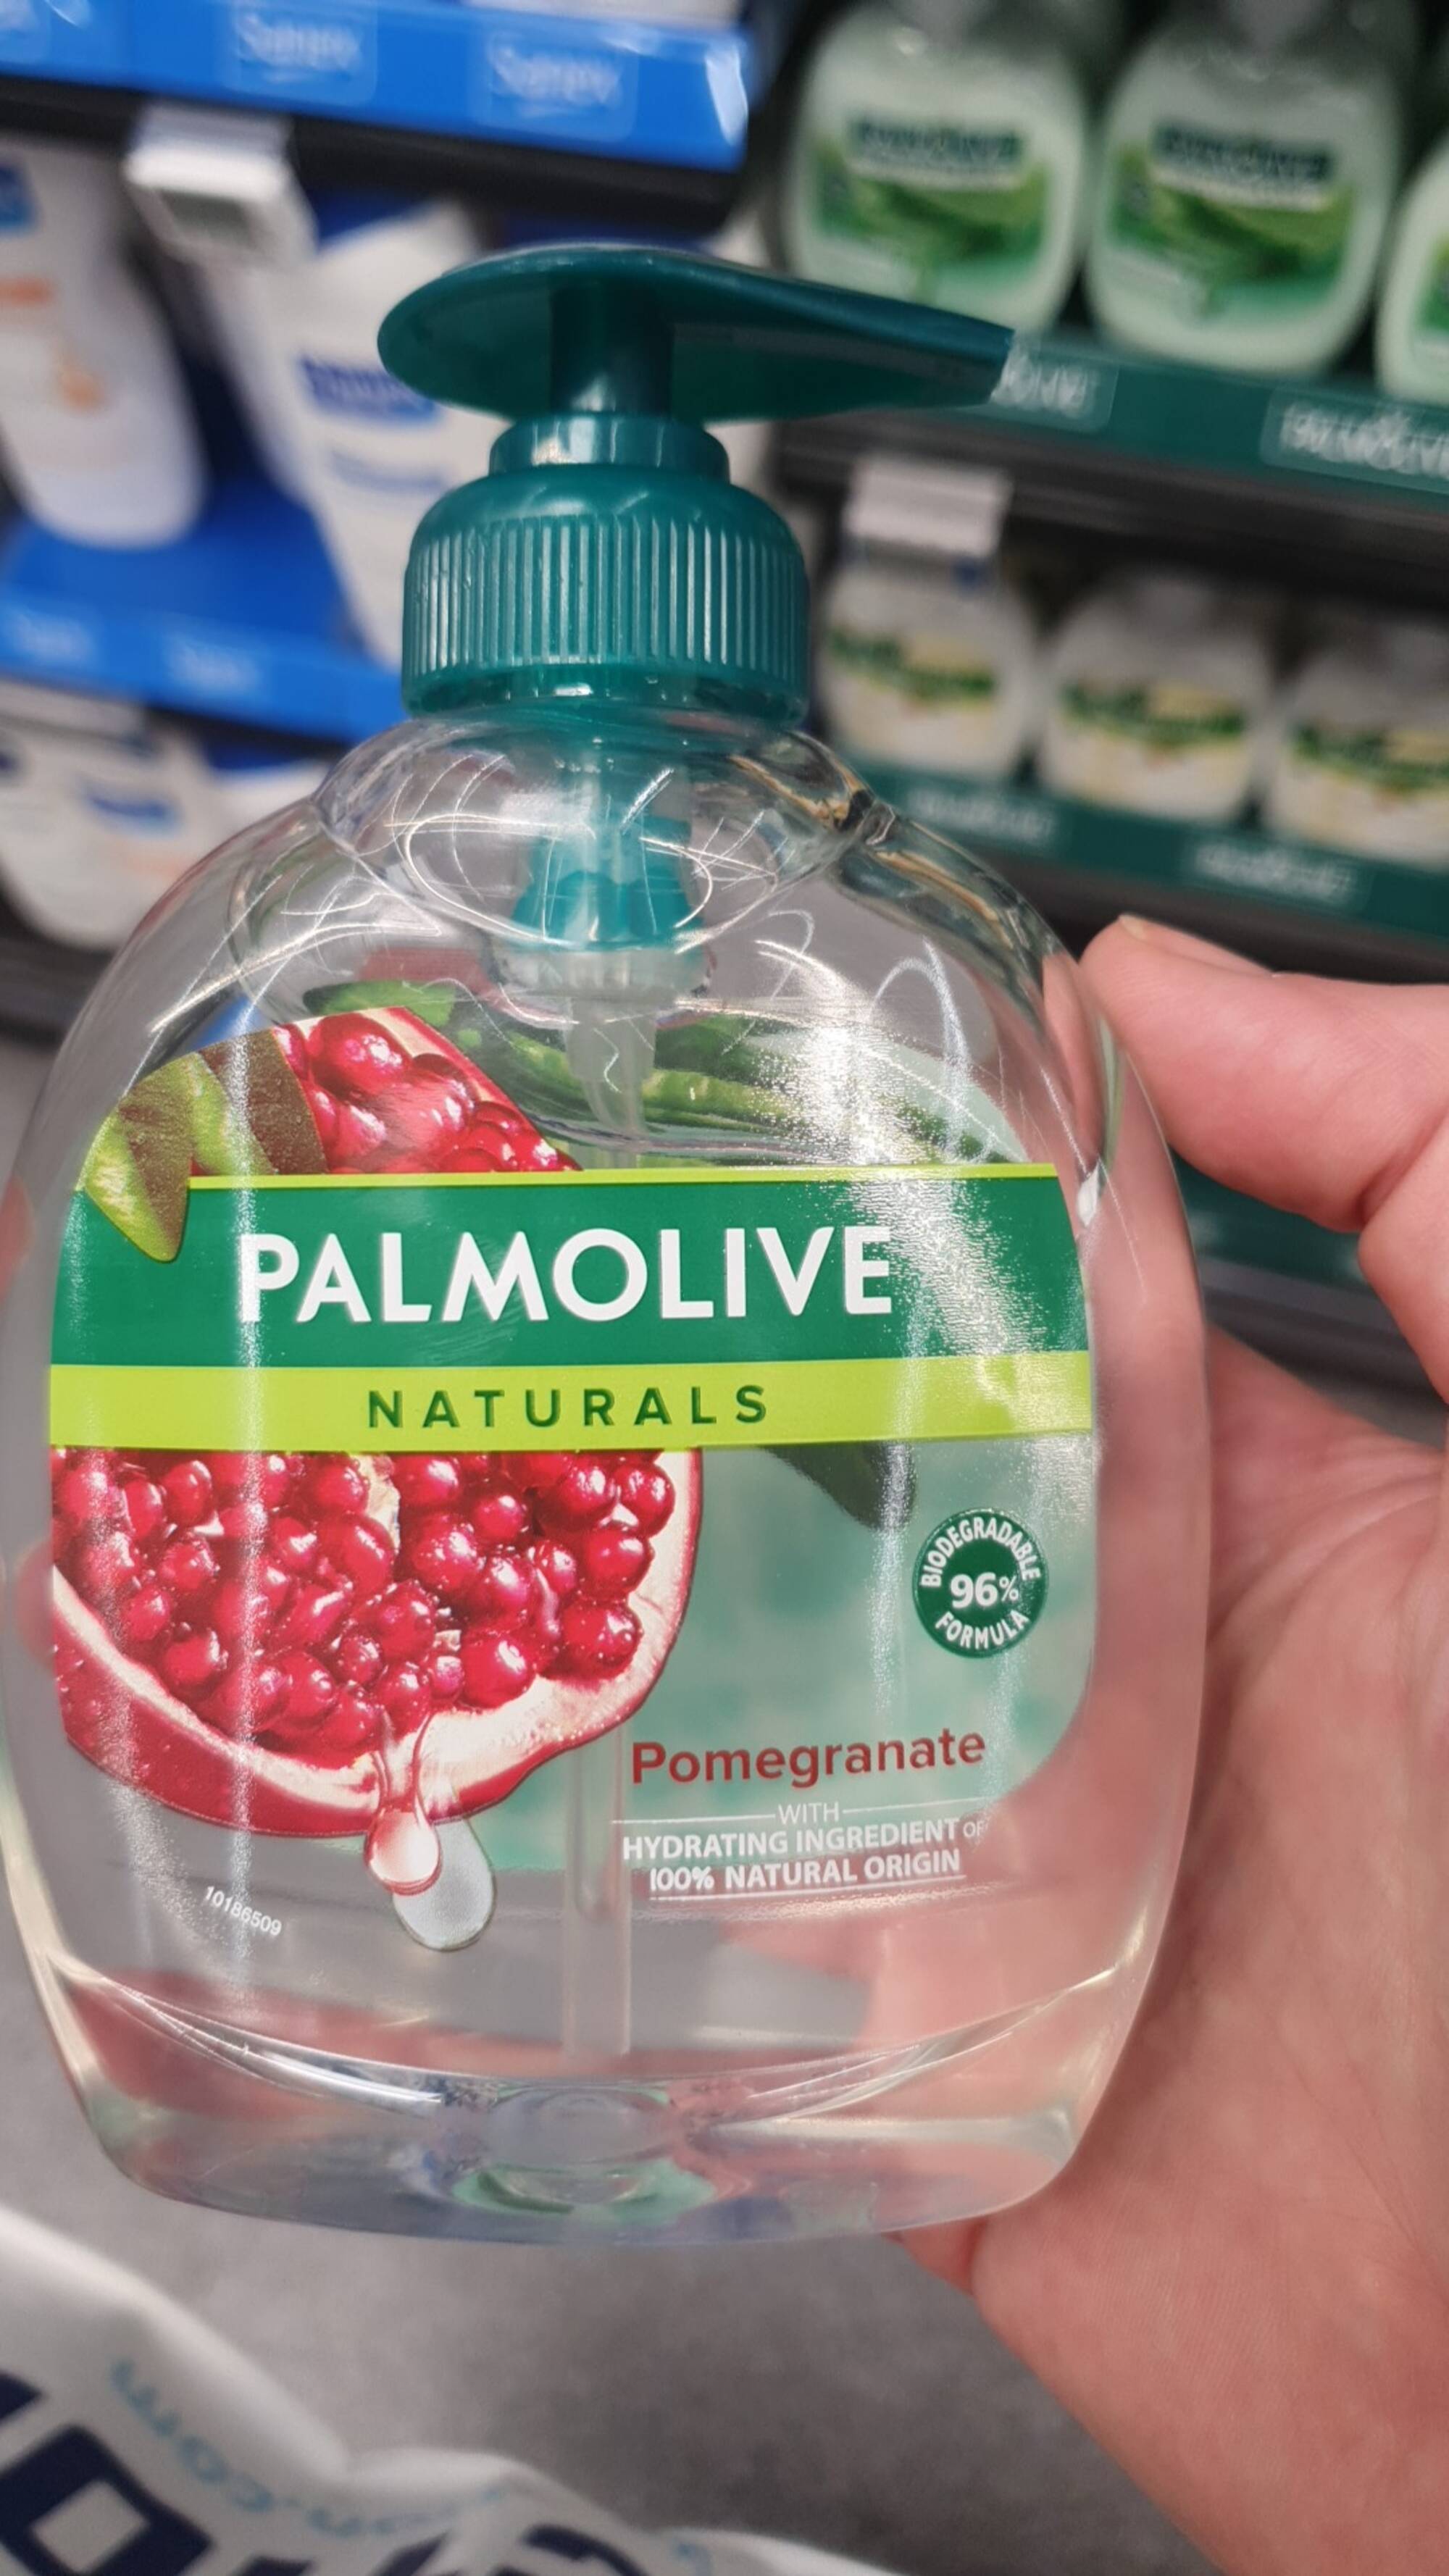 PALMOLIVE NATURALS - Pomegranate - Savon liquide pour les mains